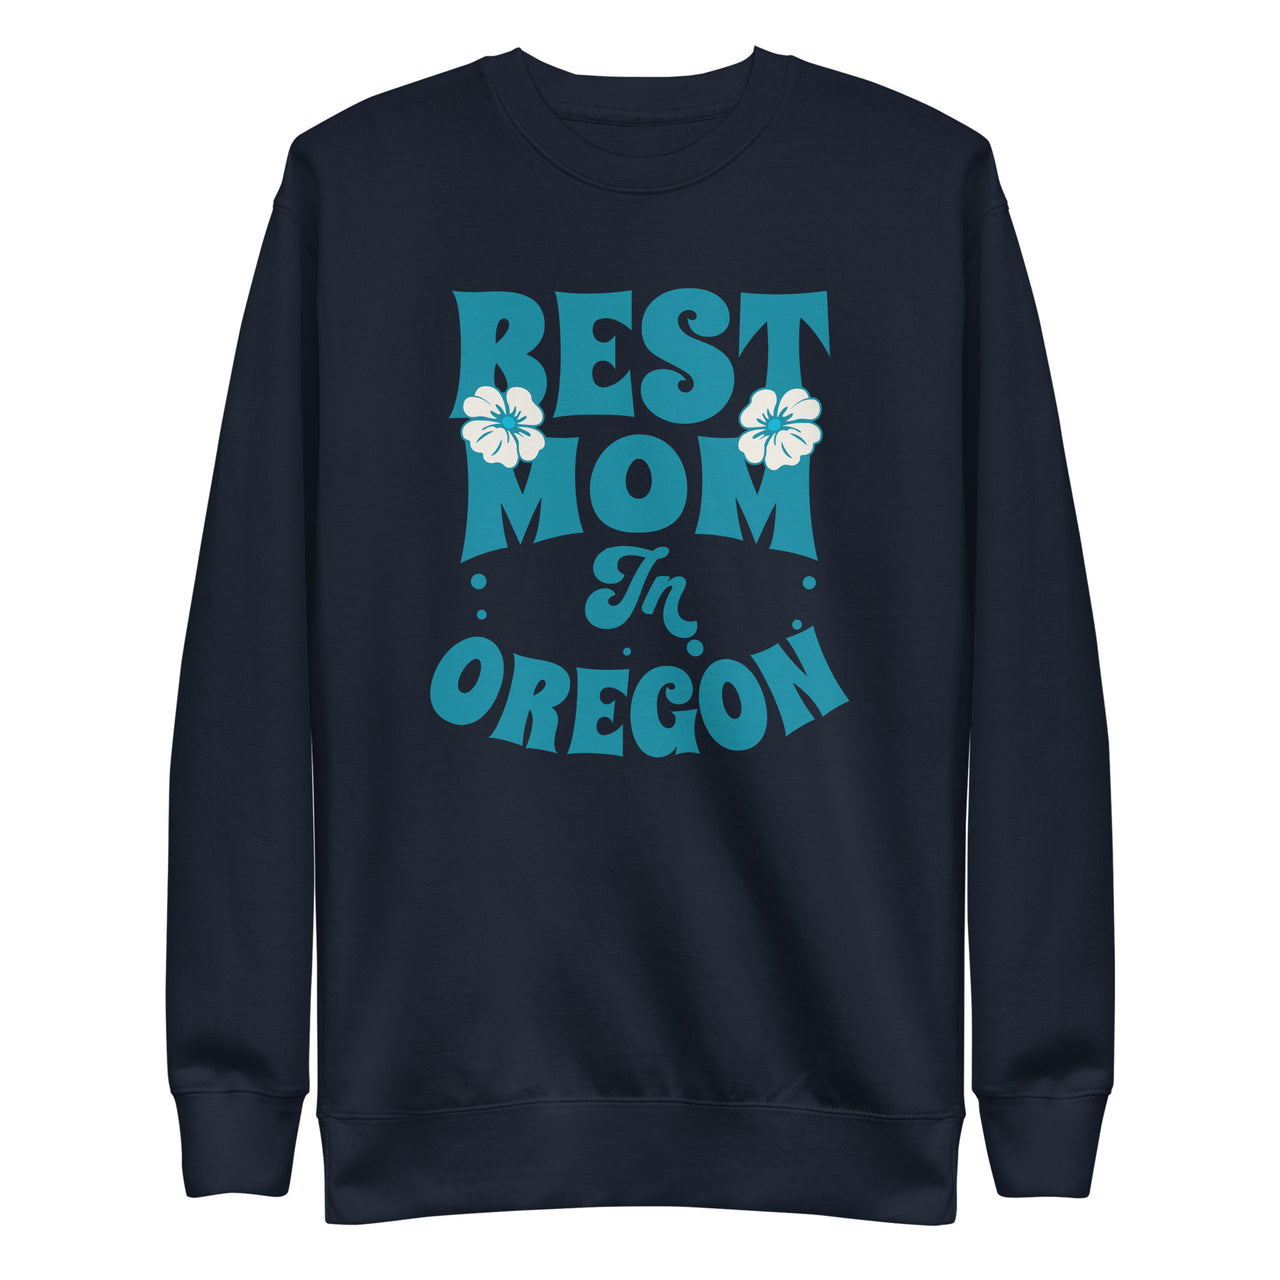 Best Mom in Oregon - Unisex Premium Sweatshirt